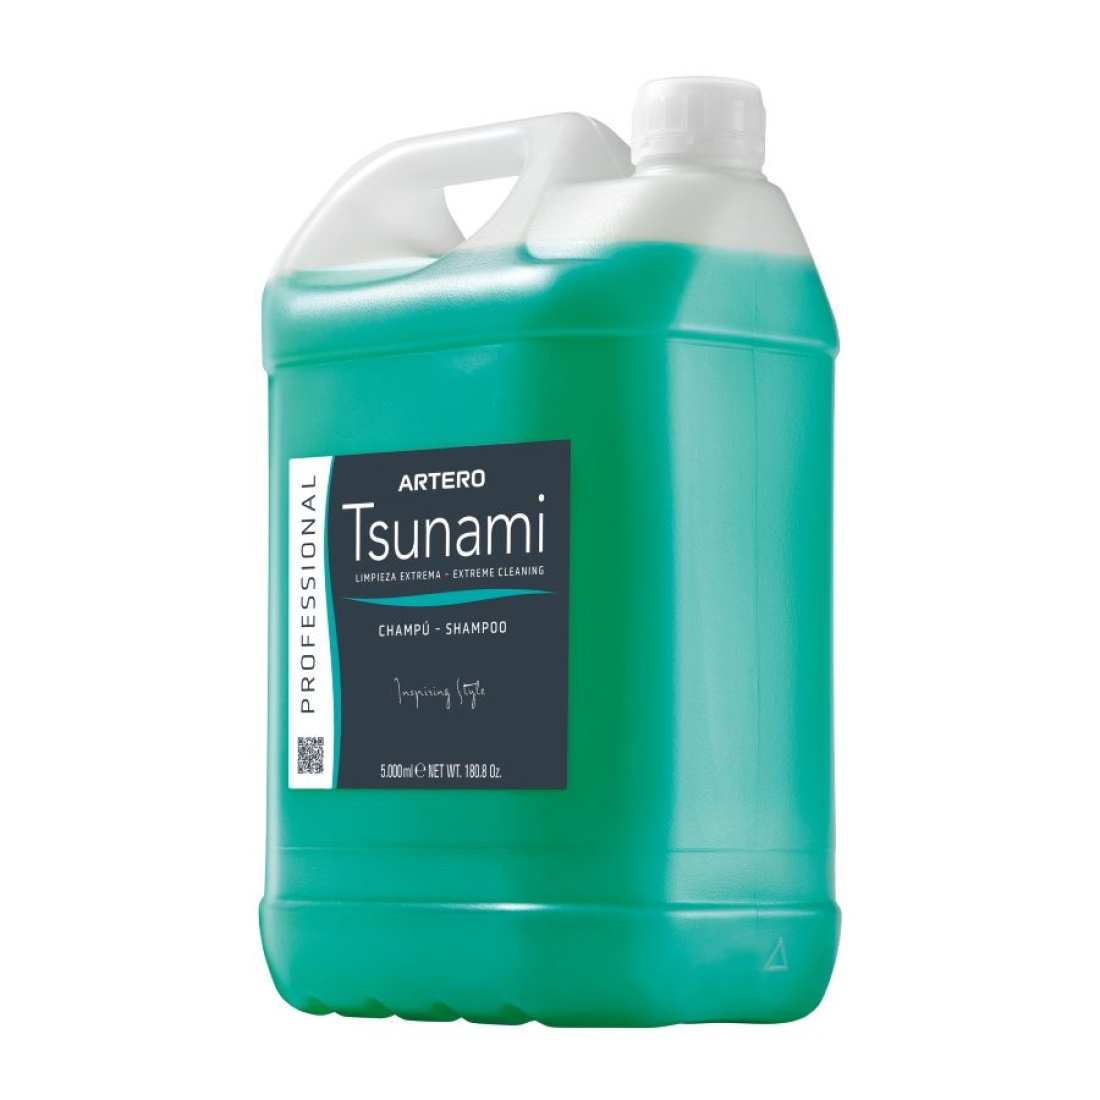 artero tsunami shampoo 5 liters